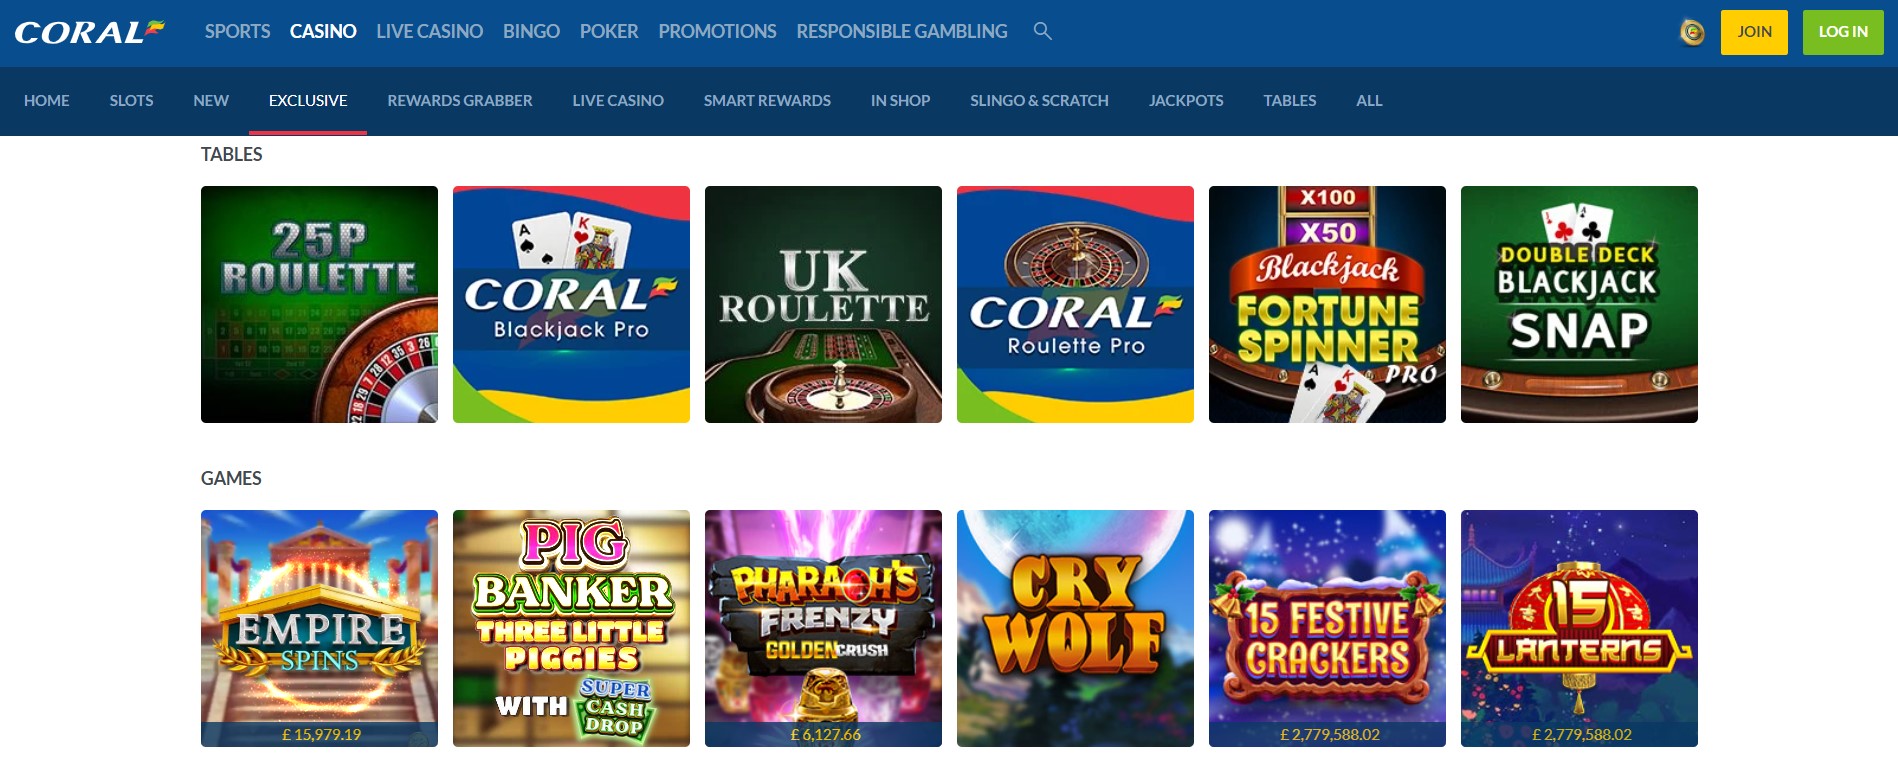 Coral Casino Games